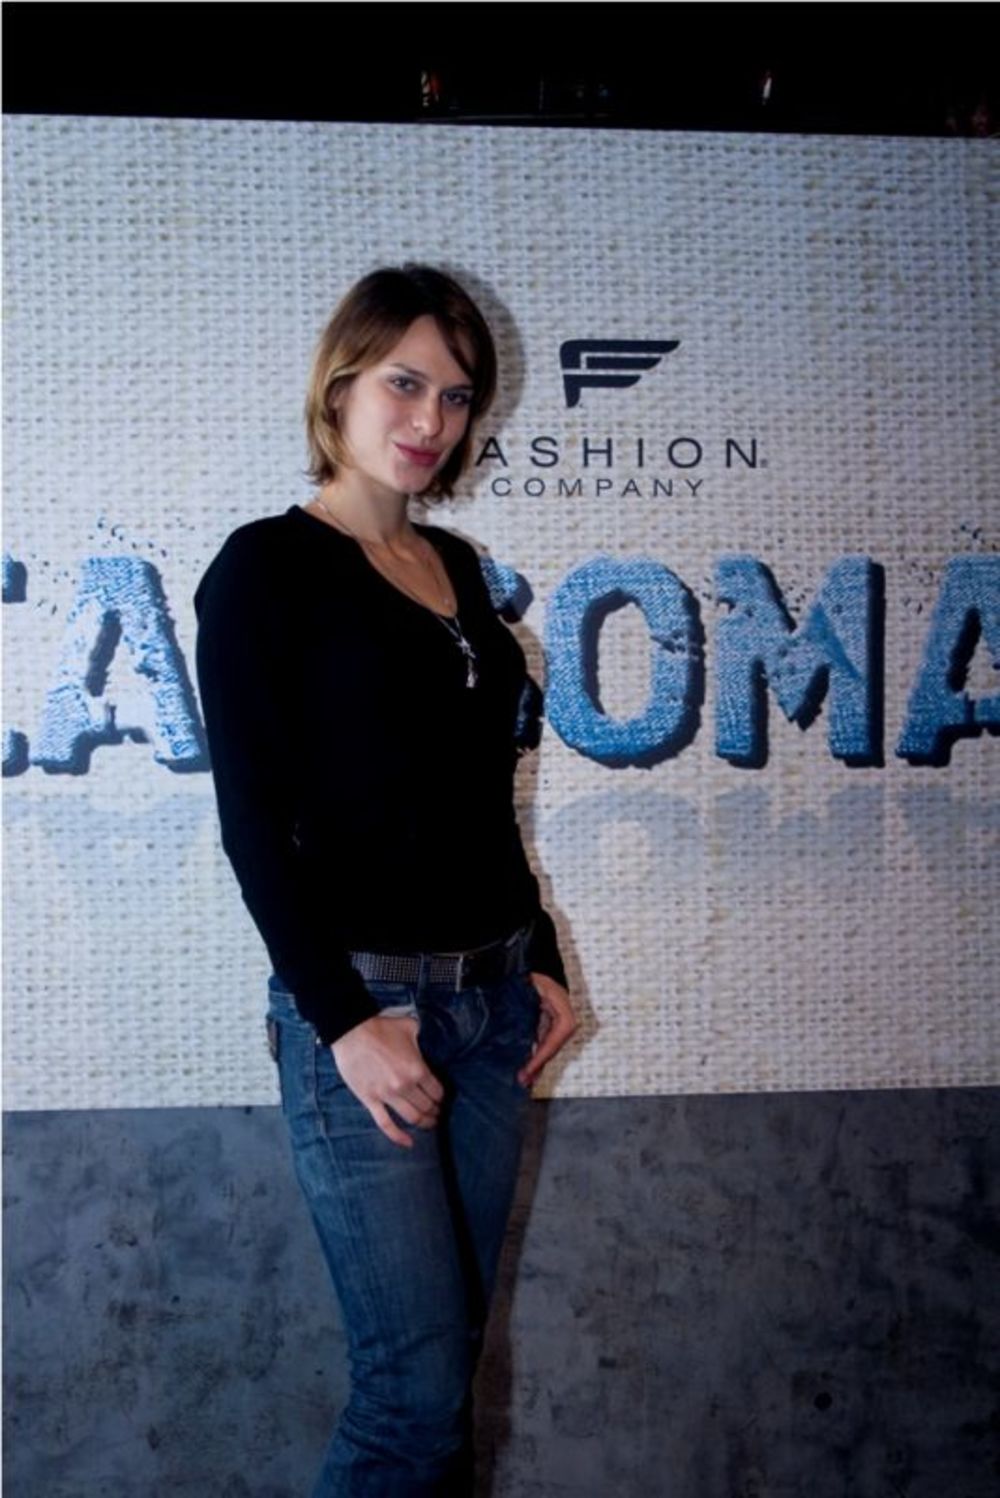 U klubu Tube održana je tradicionalna modna revija džinsa, popularna Jeansomania by Fashion Company, u organizaciji Modnog Studija Click.